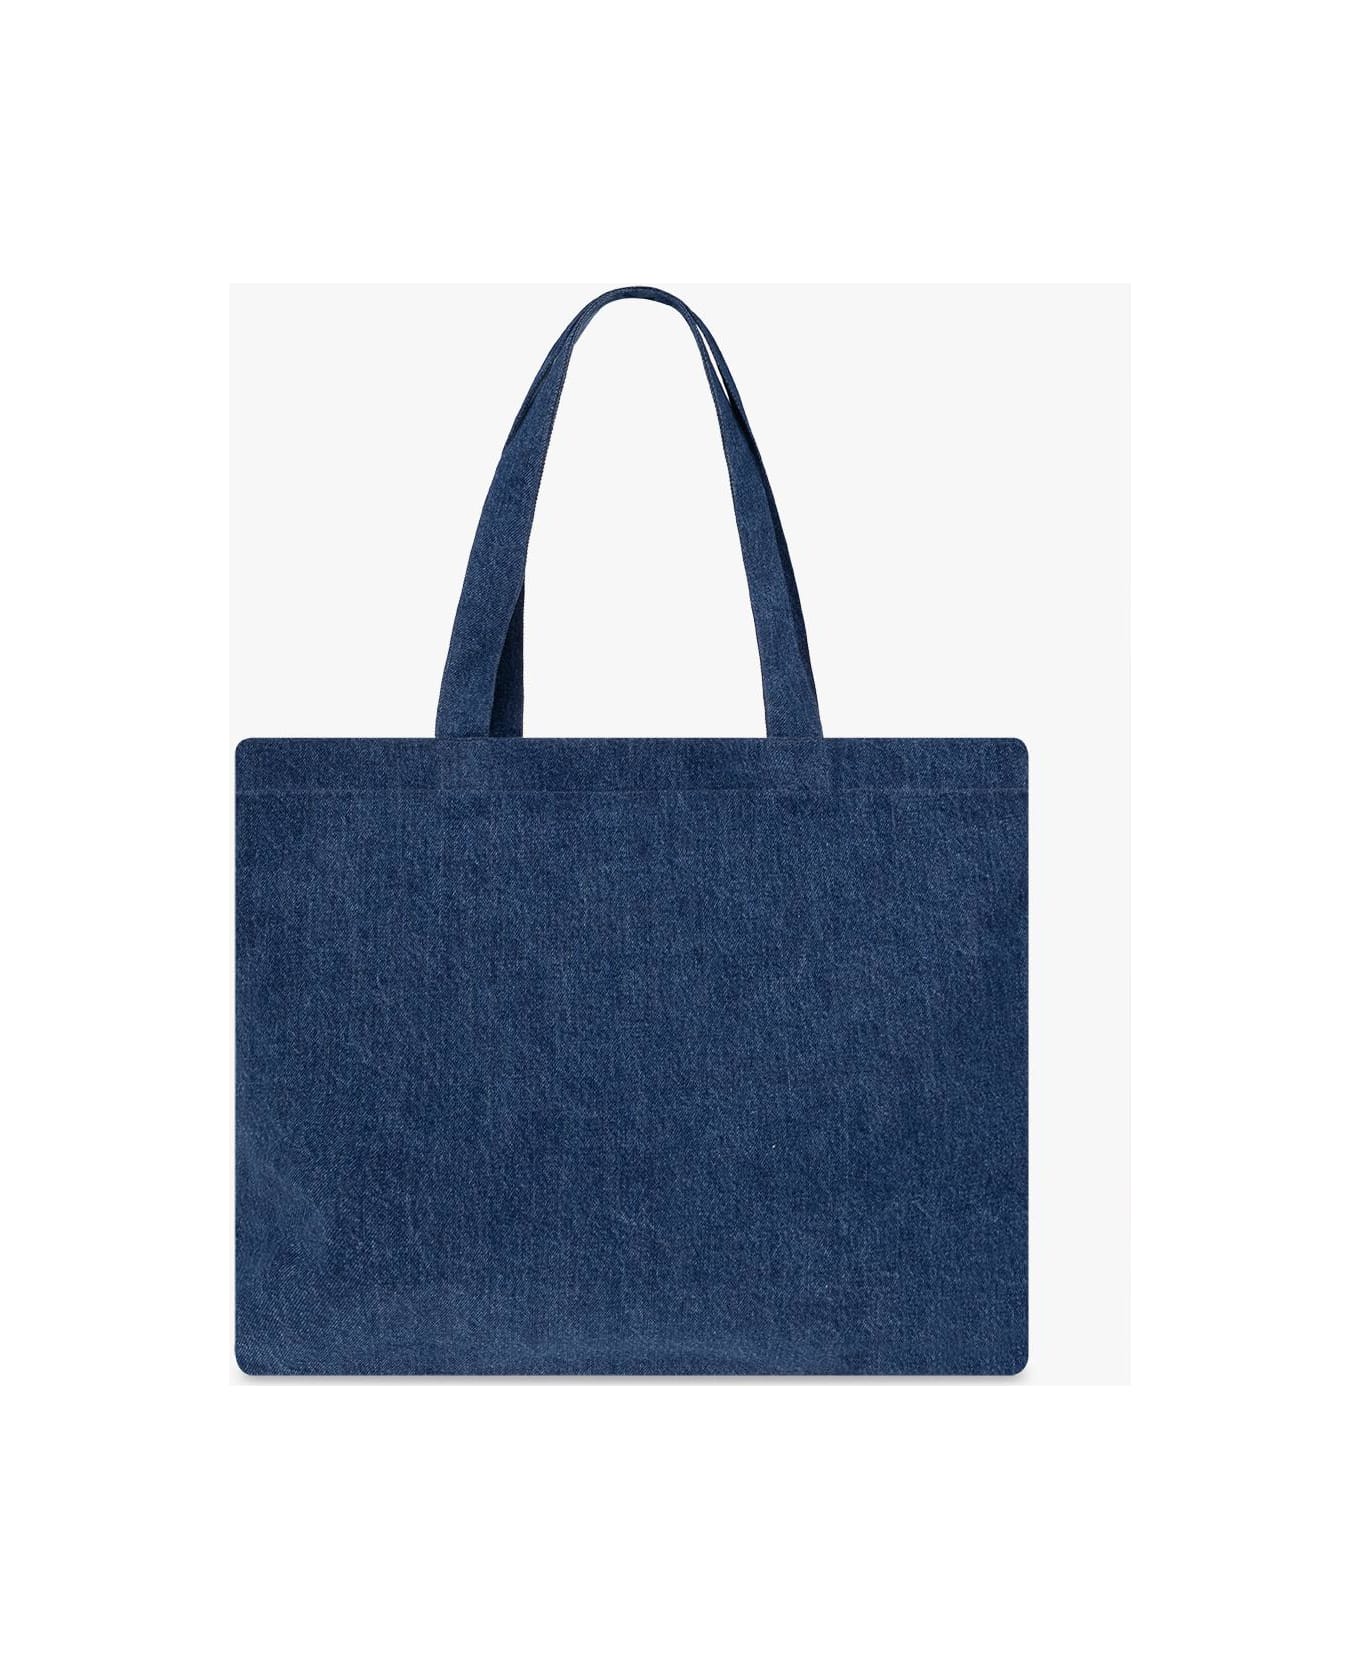 A.P.C. 'diane' Denim Shopper Bag - Blu